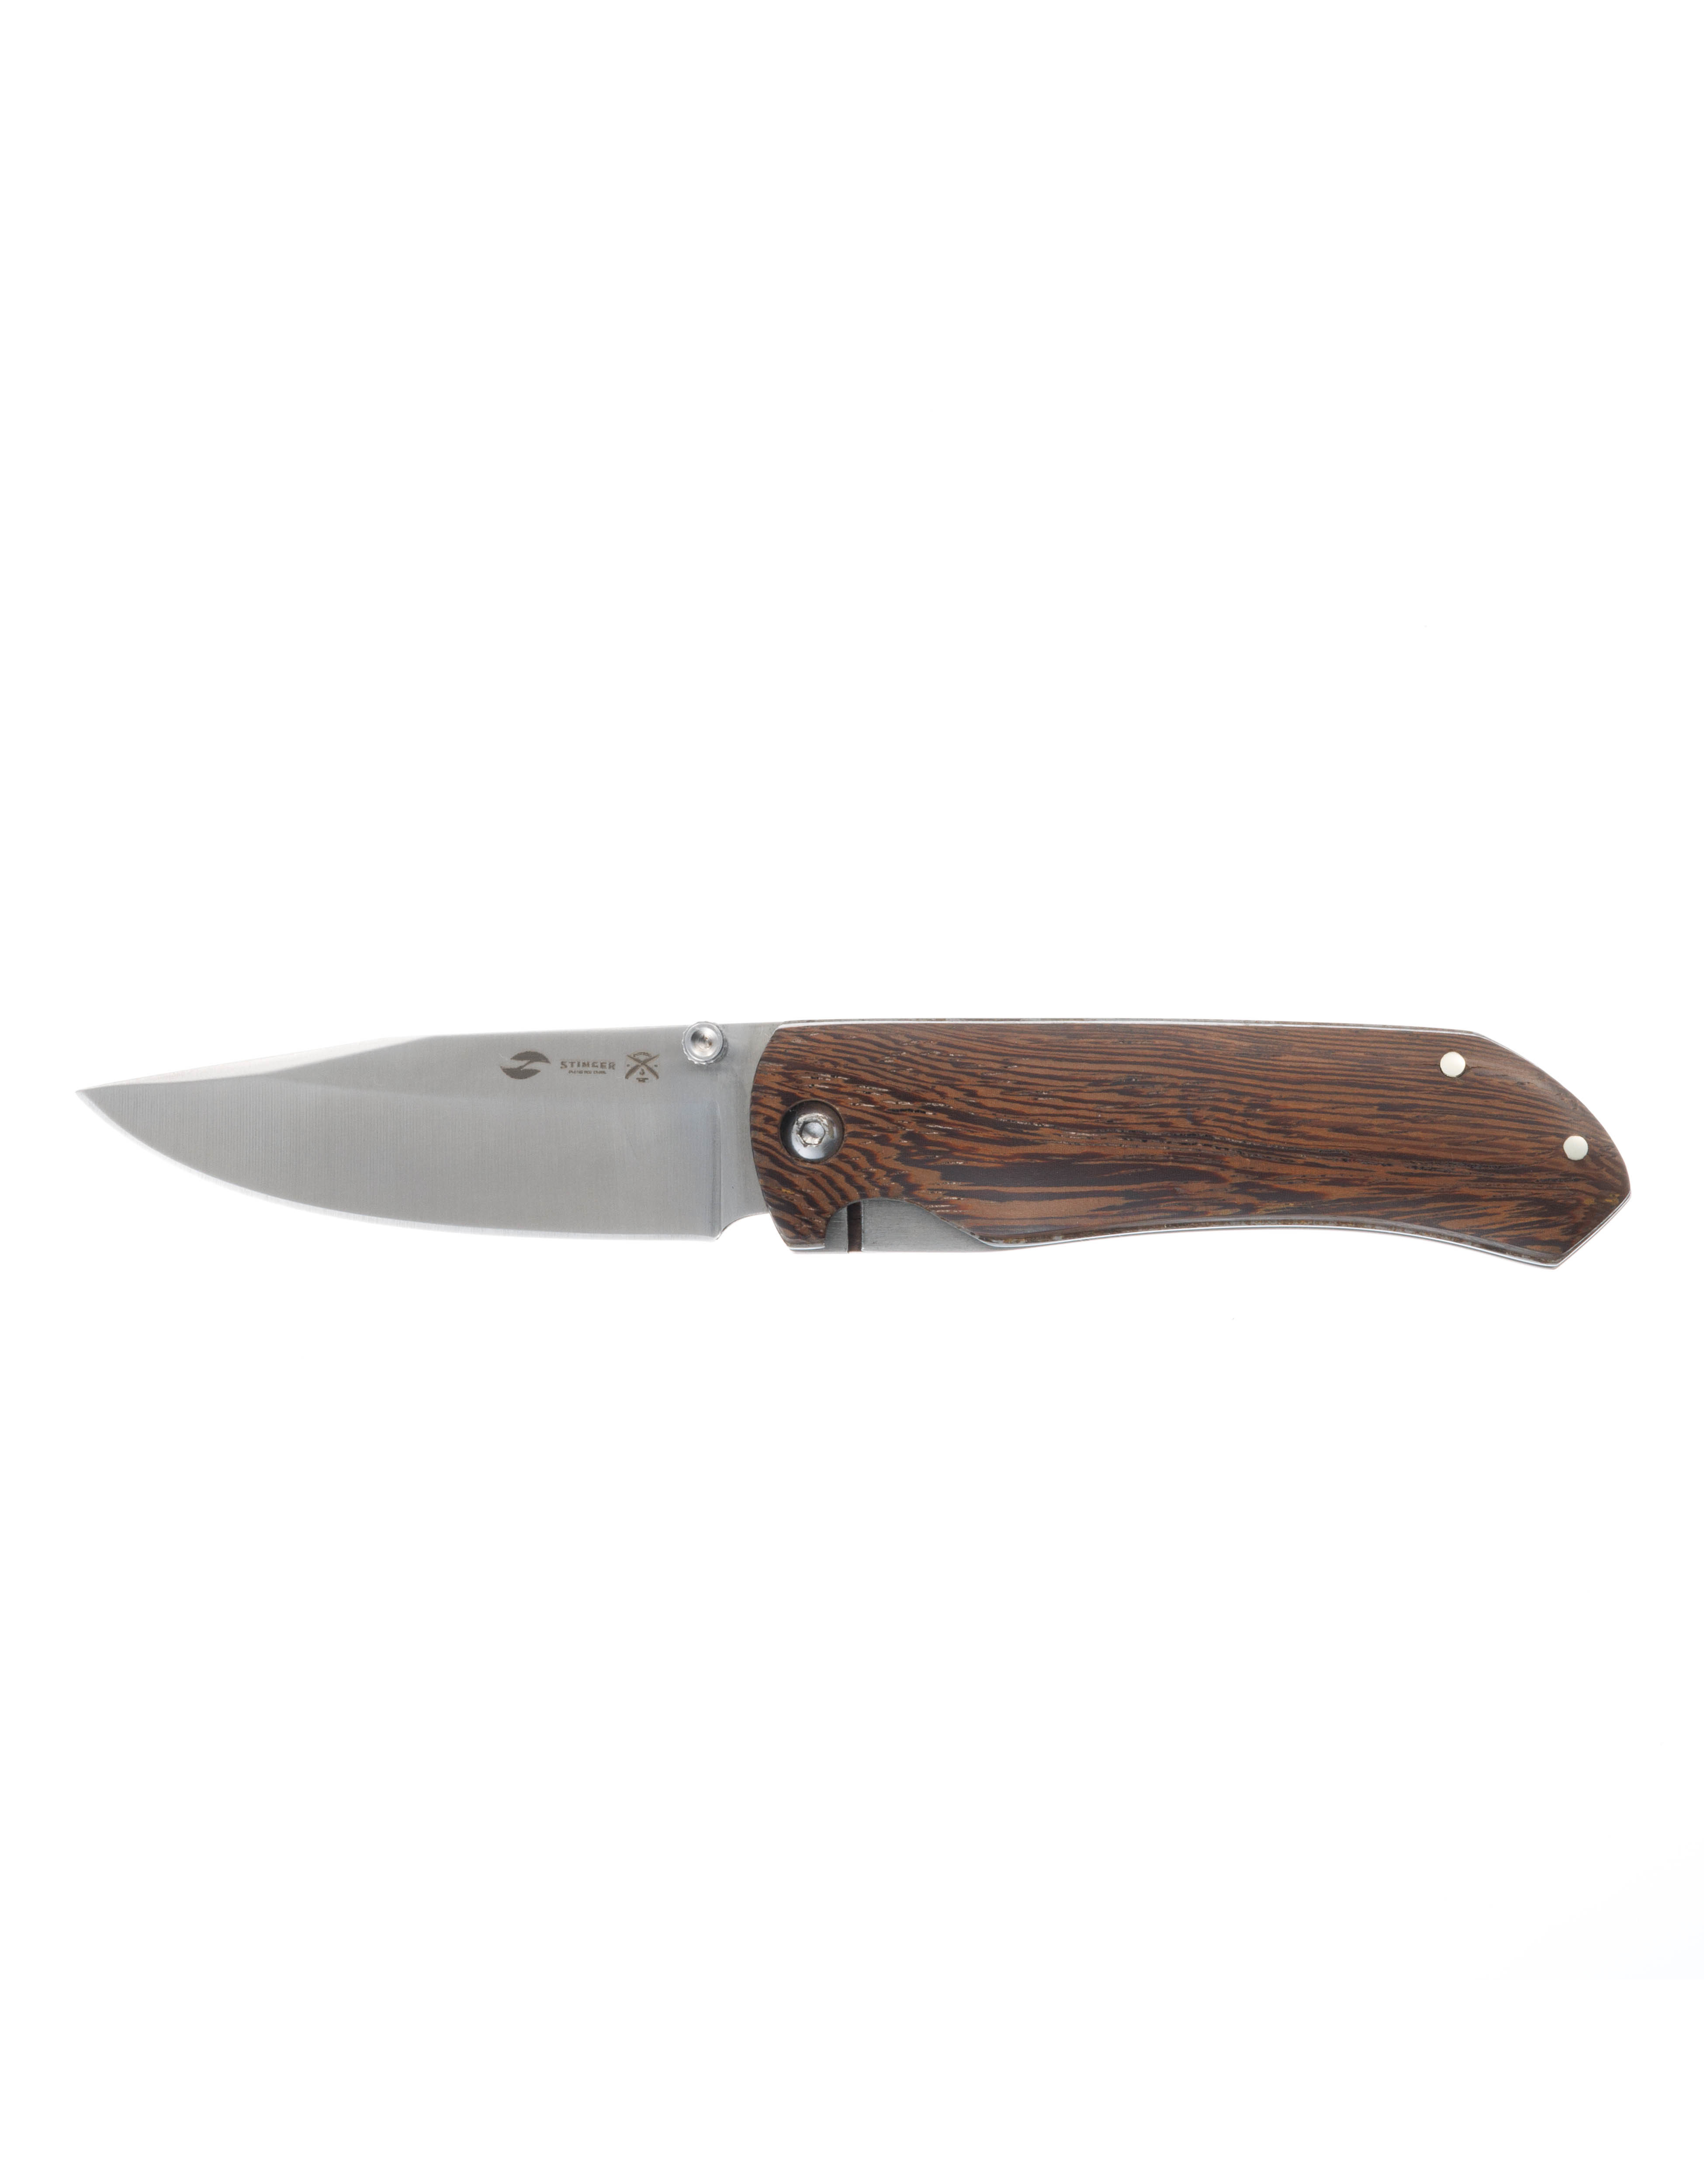 Нож складной Stinger FB634, клинок 77 мм, рукоять древесина венге, коричневый, с чехлом